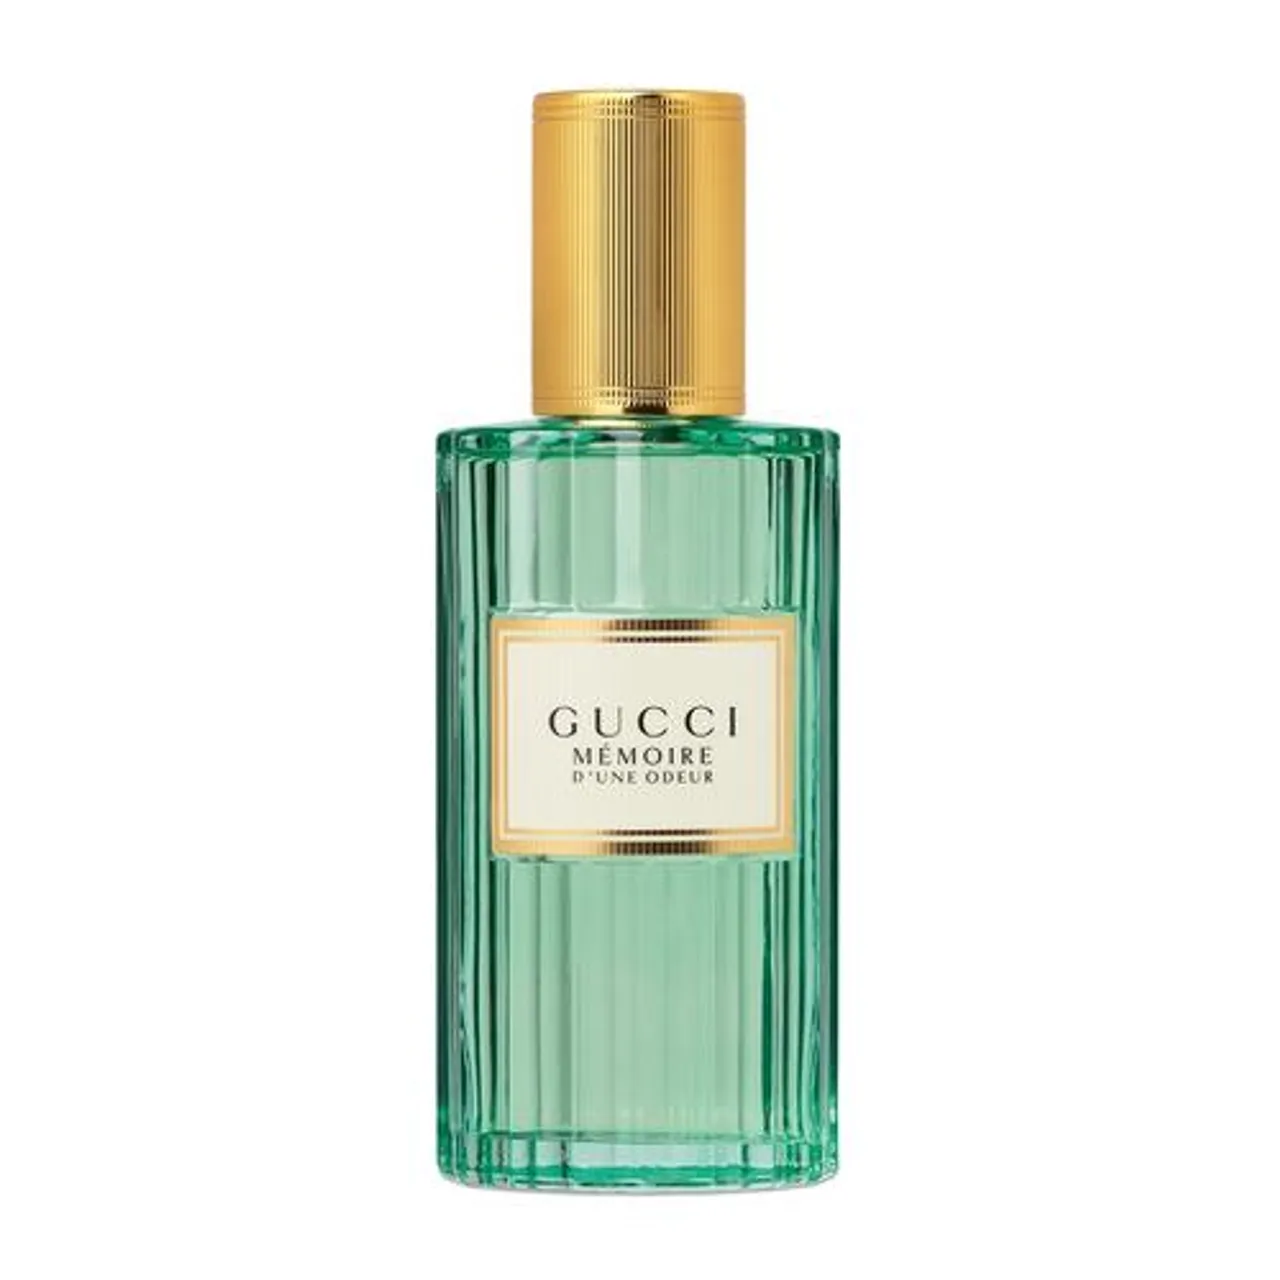 Gucci Memoire d'Une Odeur Eau de Parfum 40 ml